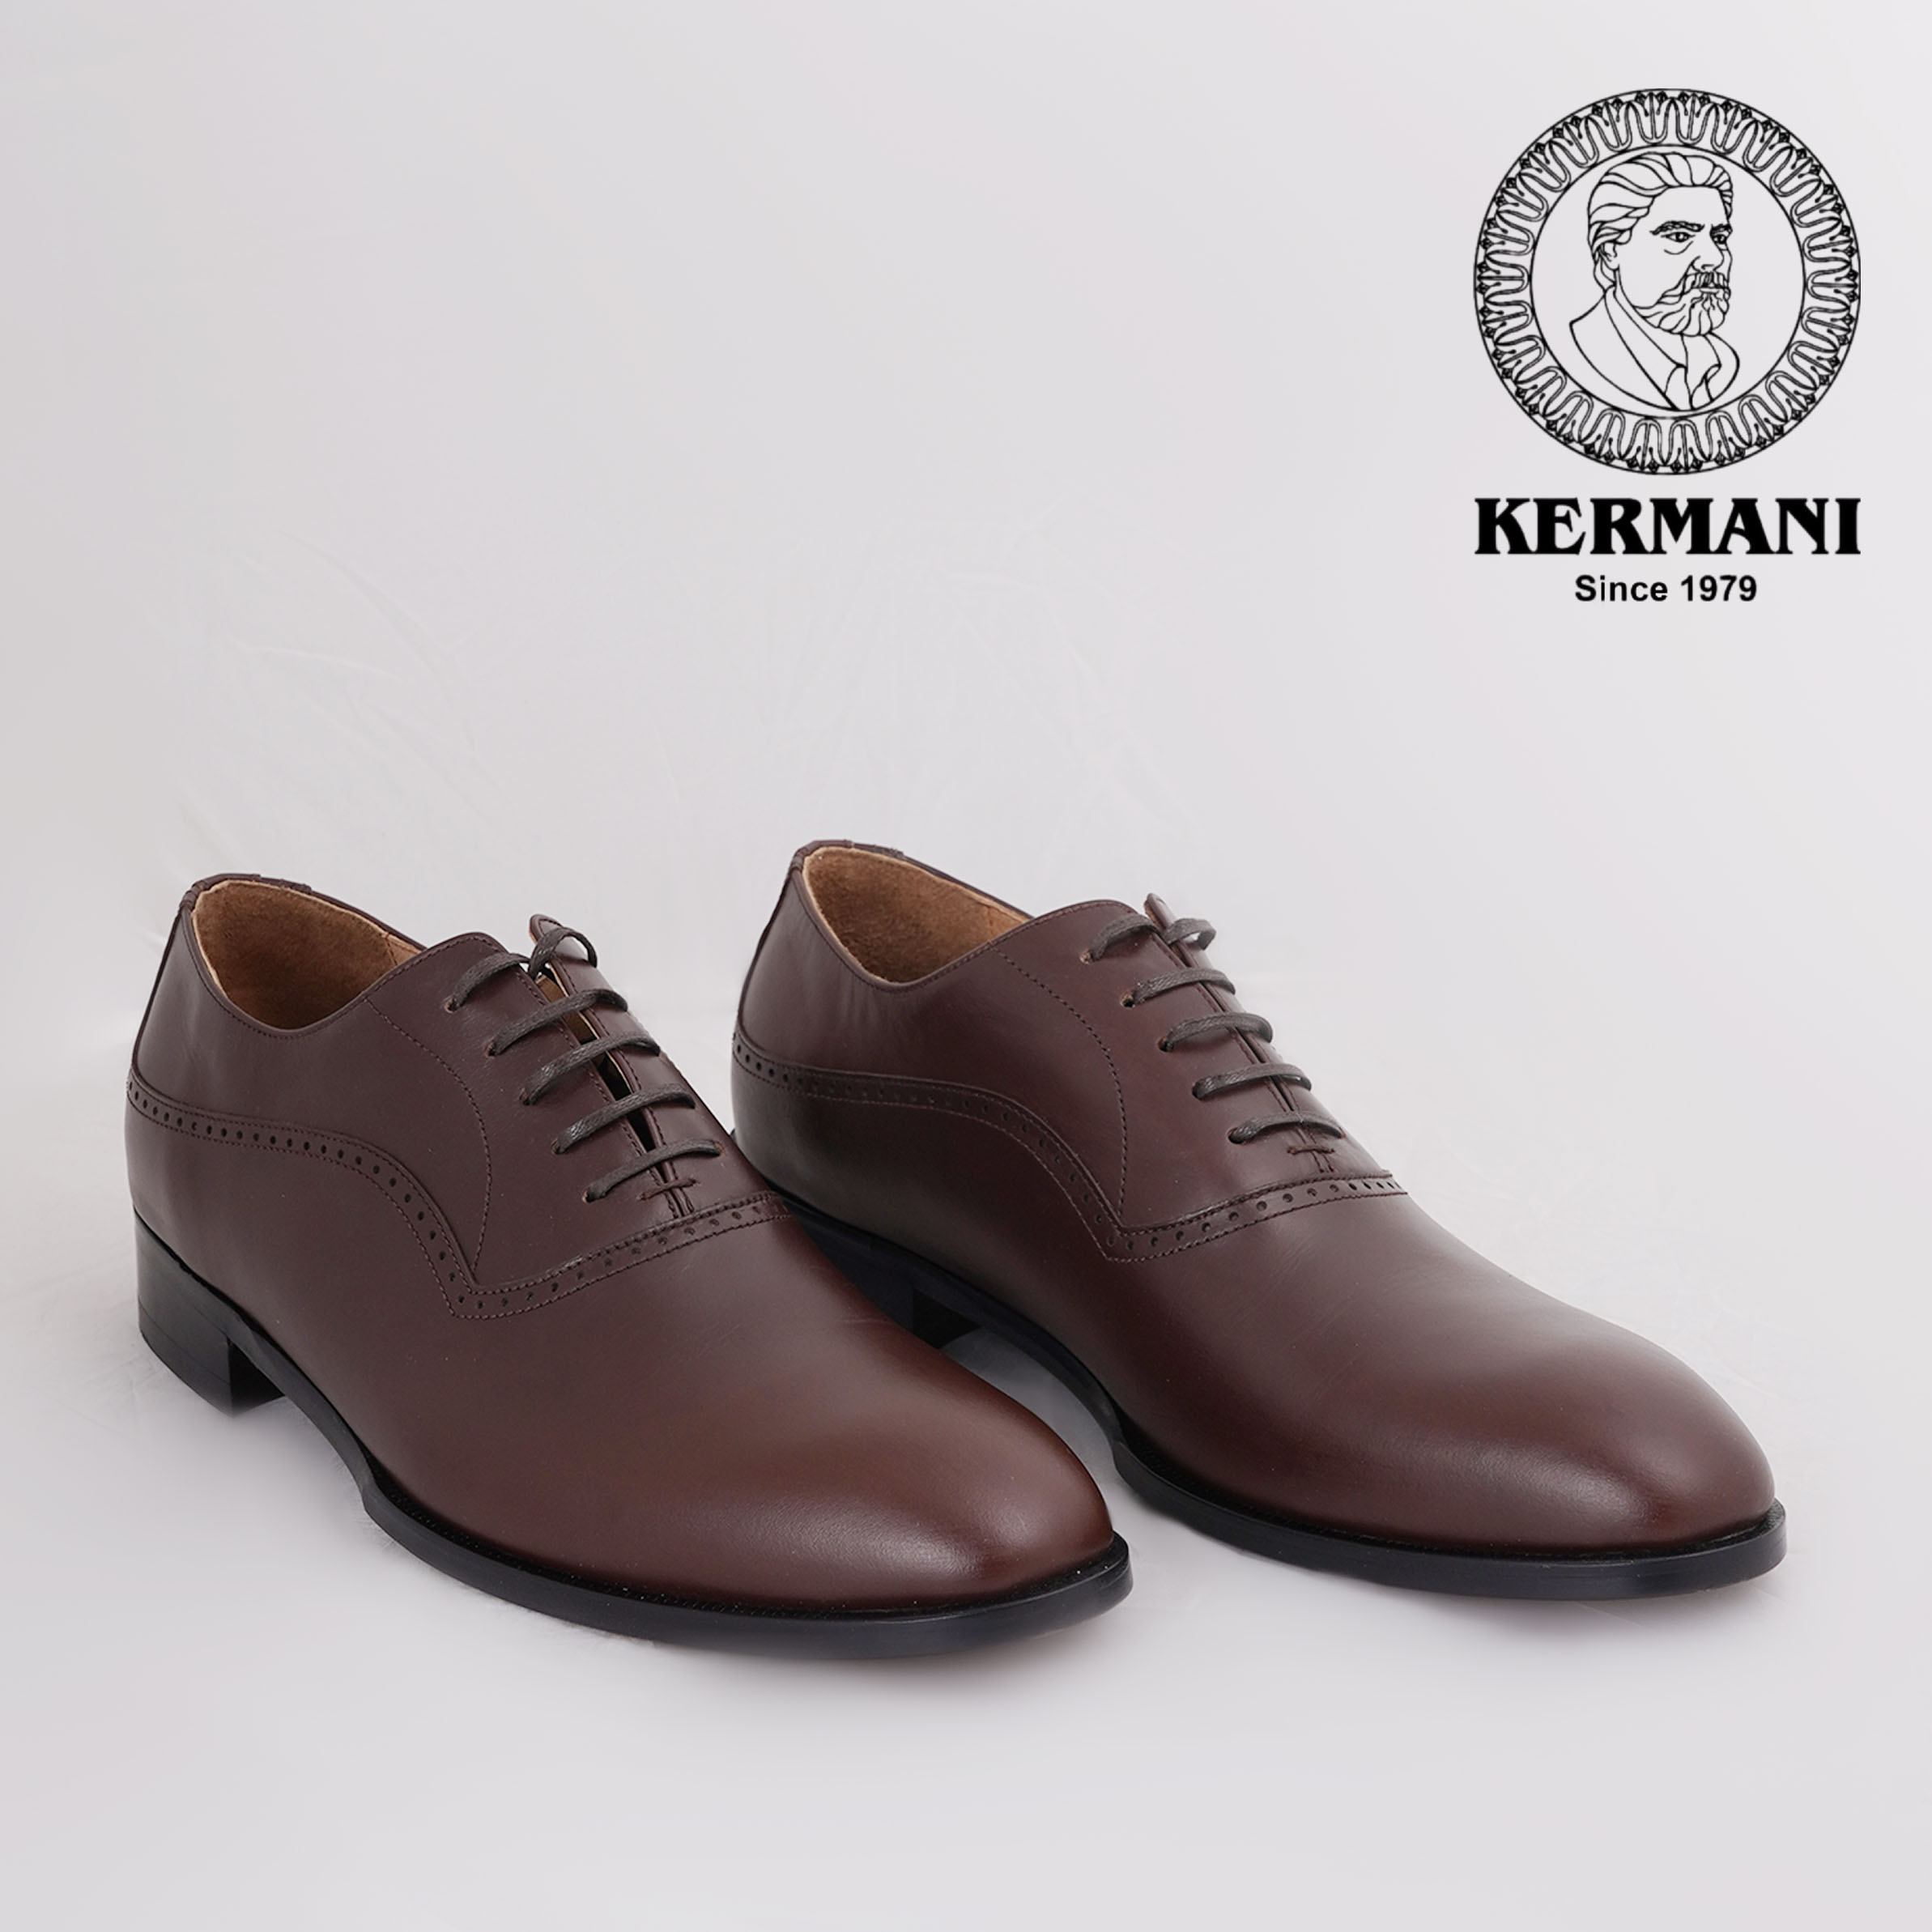 کفش مردانه کرمانی مدل چرم دستدوز طبیعی کد 1071 رنگ قهوه ای -  - 6